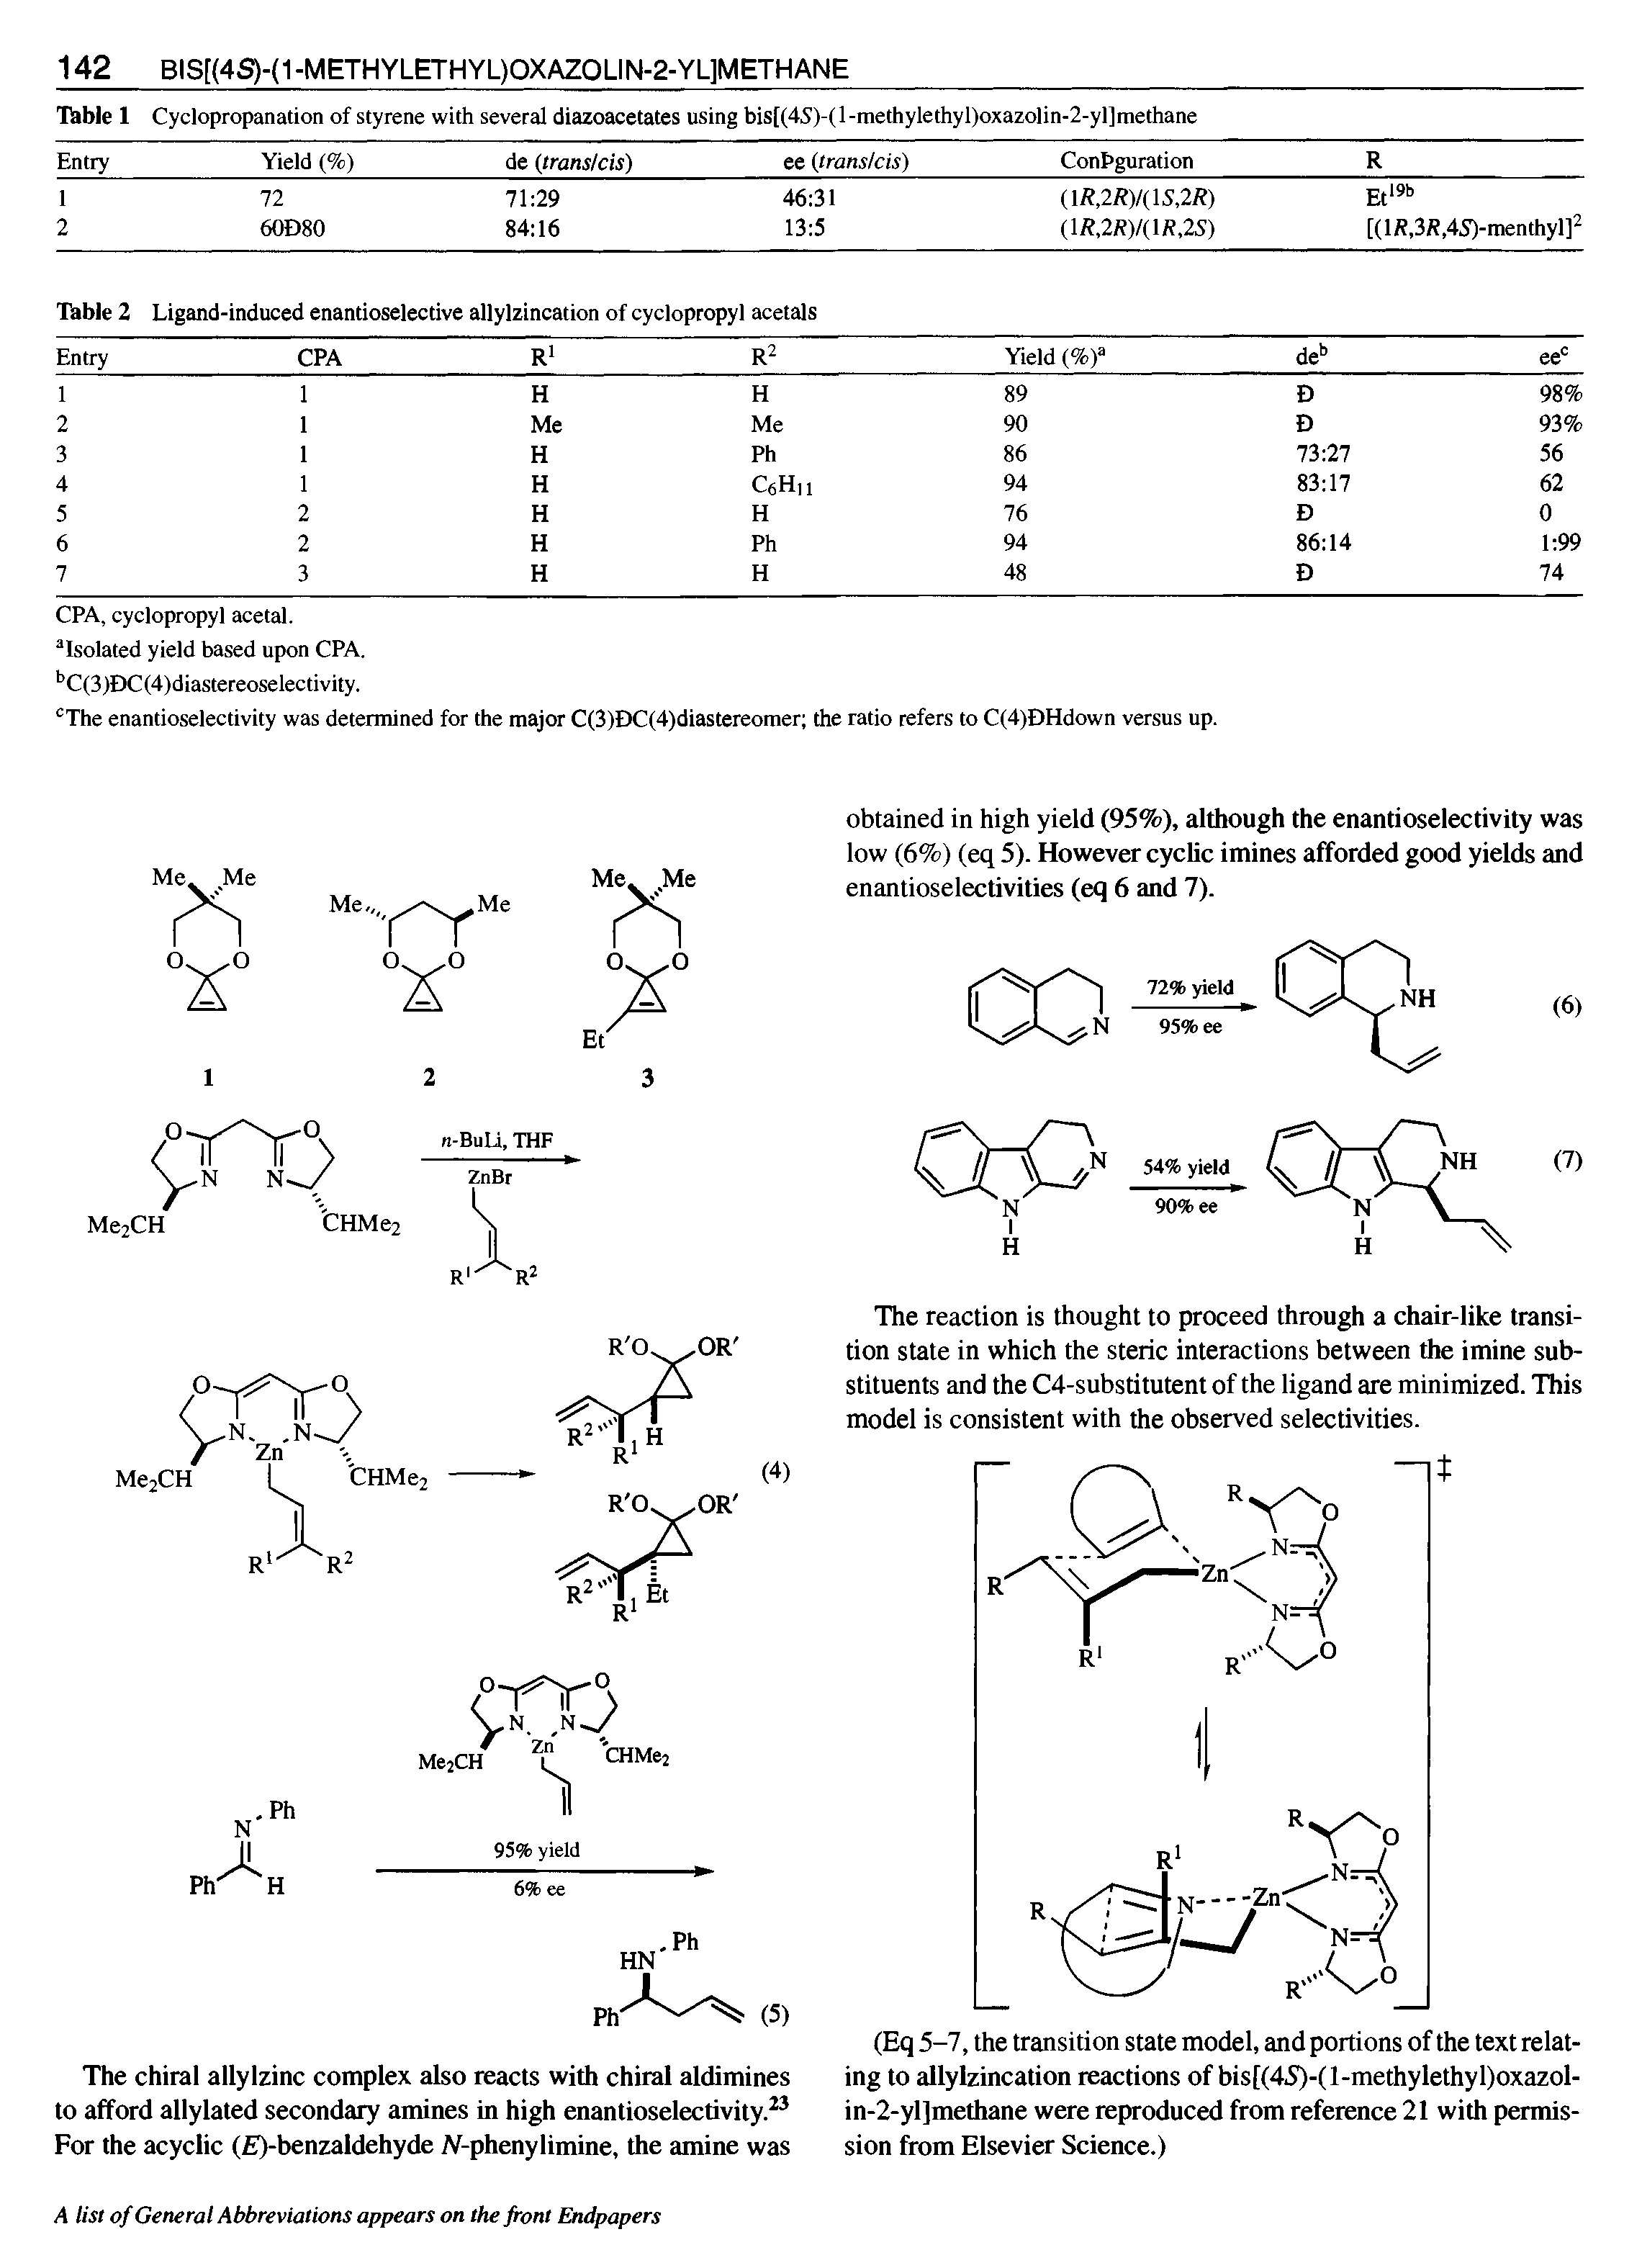 Table 2 Ligand-induced enantioselective allylzincation of cyclopropyl acetals ...